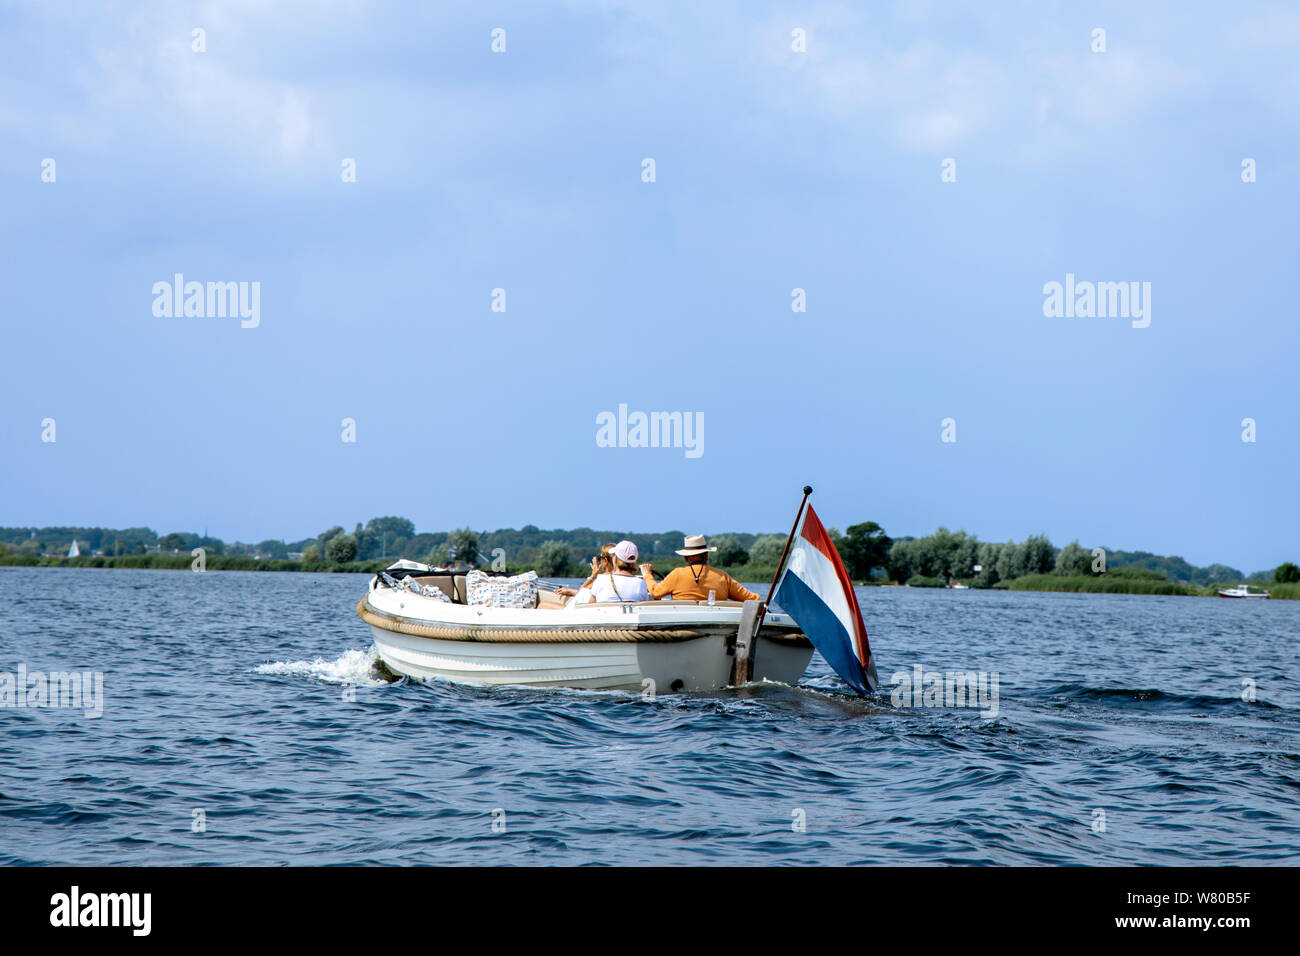 Touristen genießen die Fahrt in der weißen Luxury Motor Yacht mit niederländischer Flagge. Sommer Urlaub oder ein Boot mieten. Stockfoto